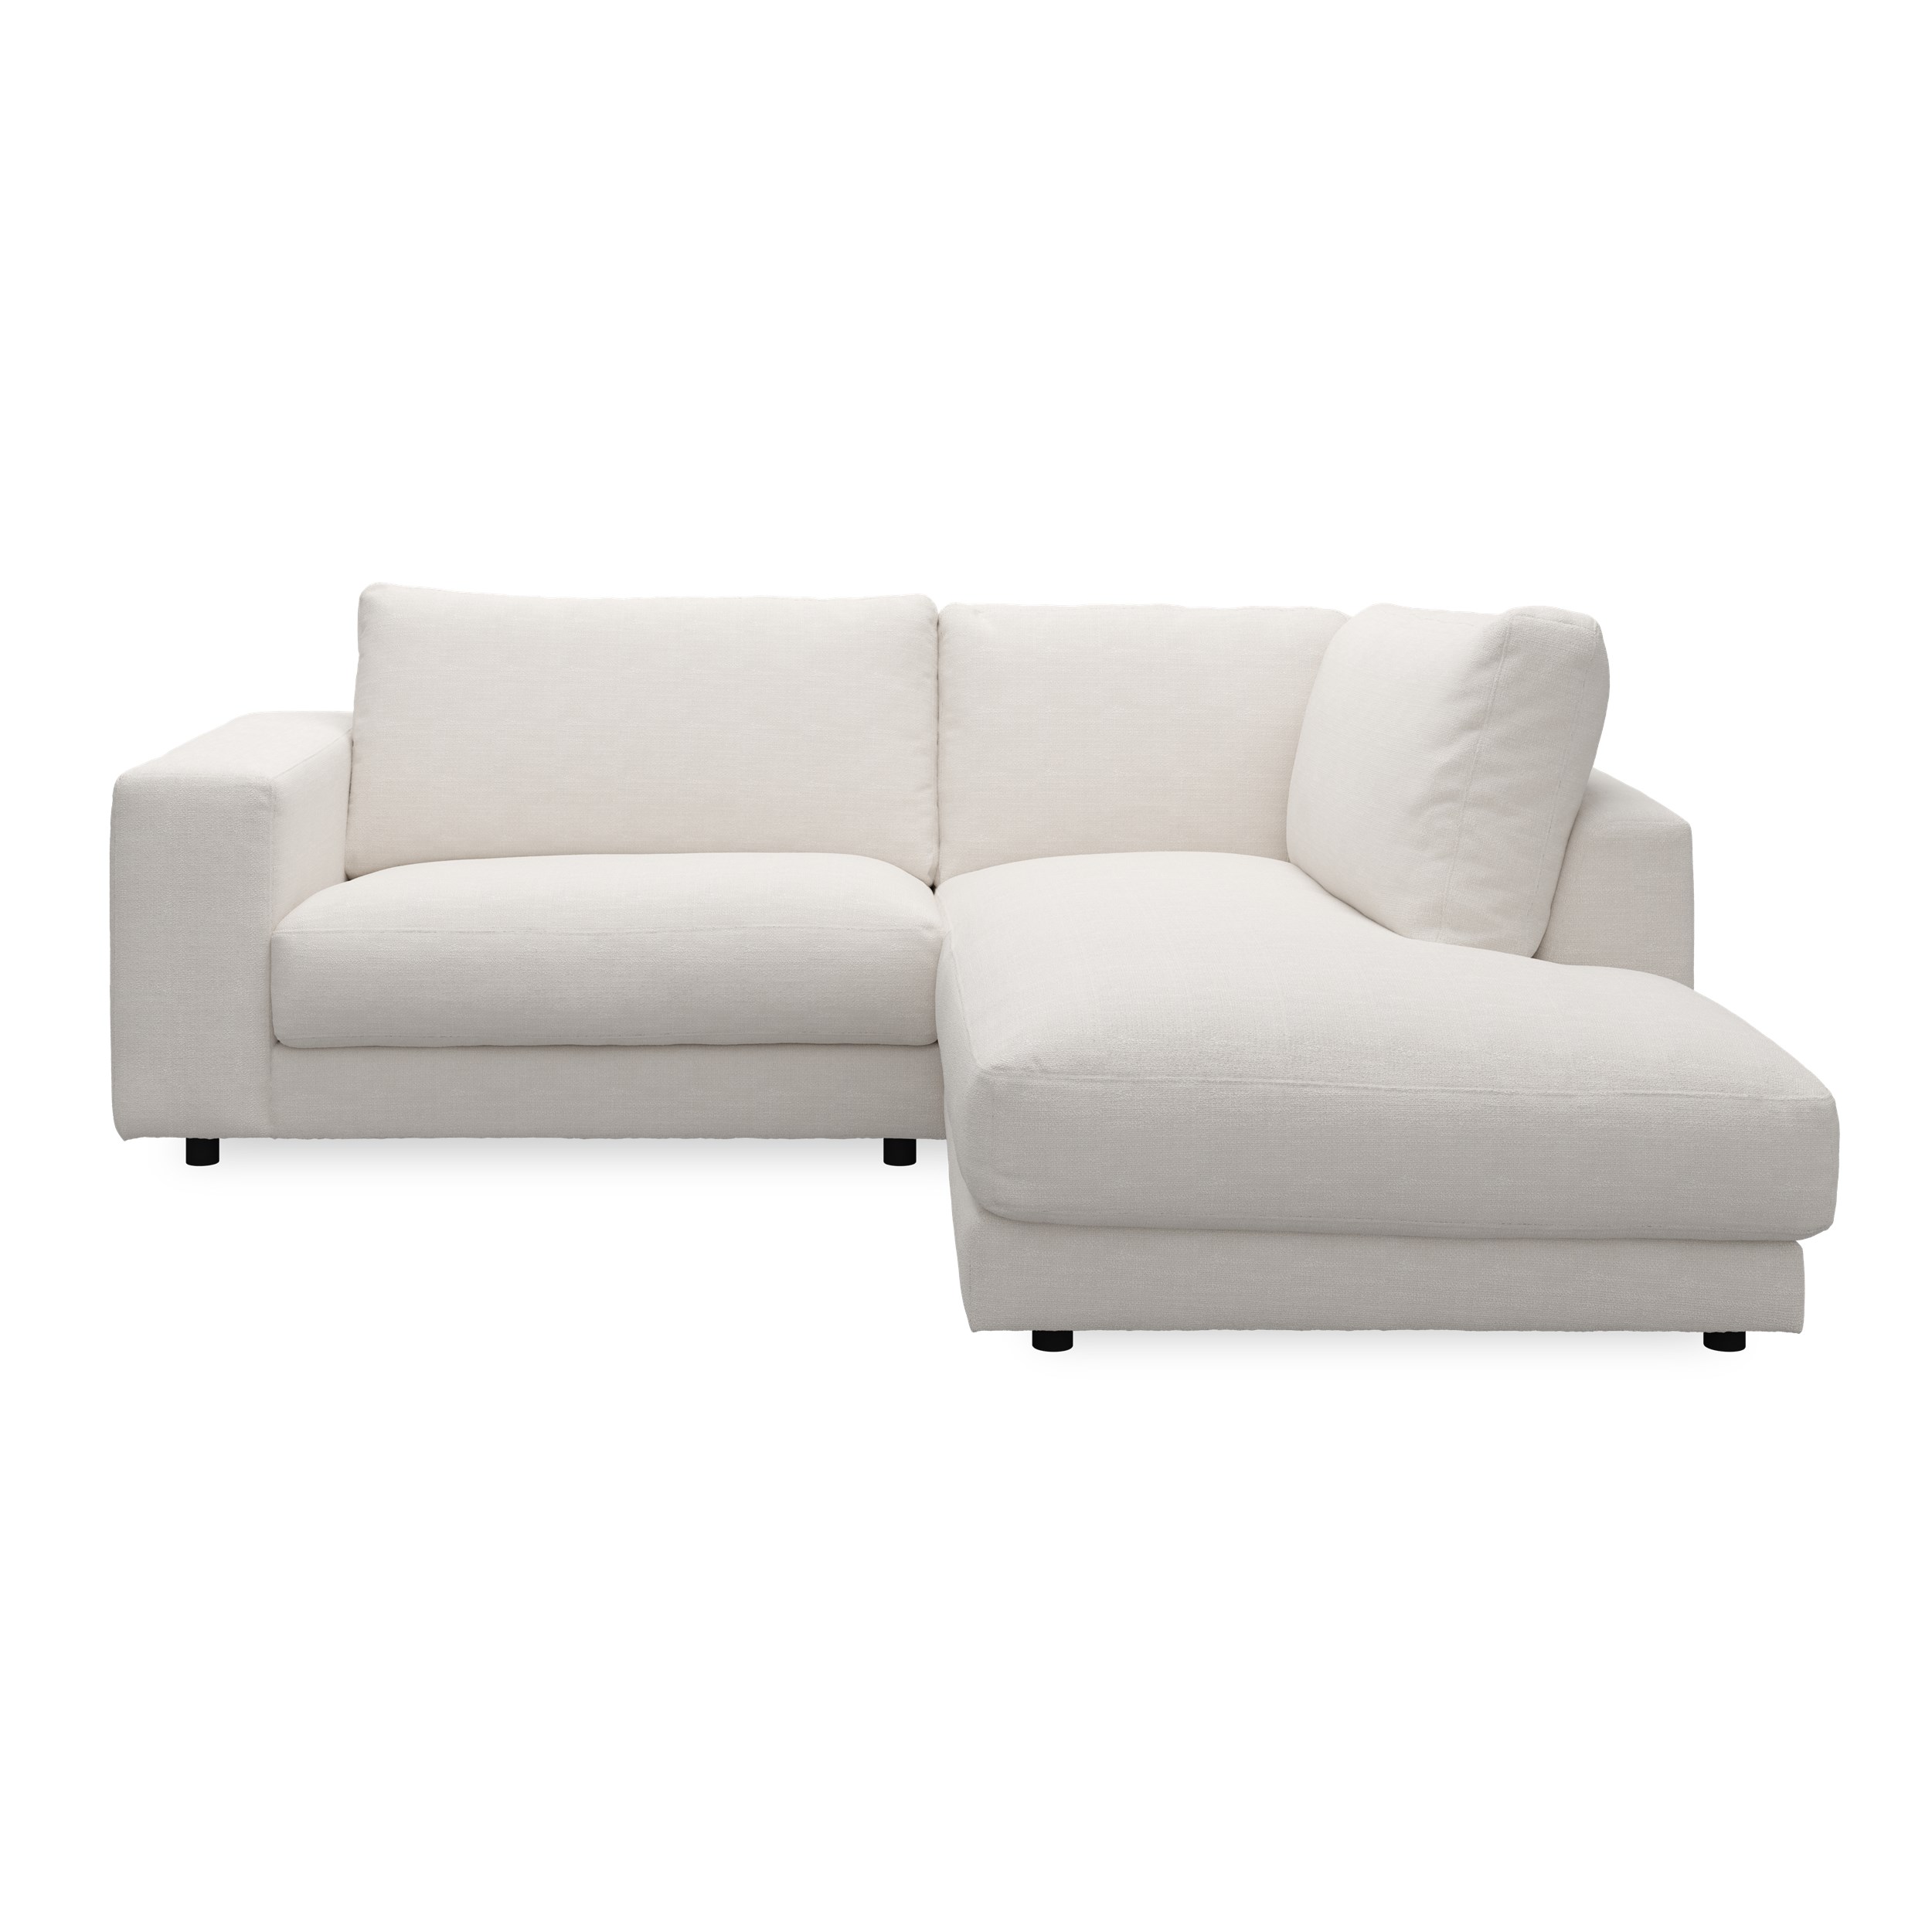 Bennent högervänd soffa med divan - Picasso Natur klädsel, ben i svart plast och S:skum/fib/din/sili R:Dun/skum